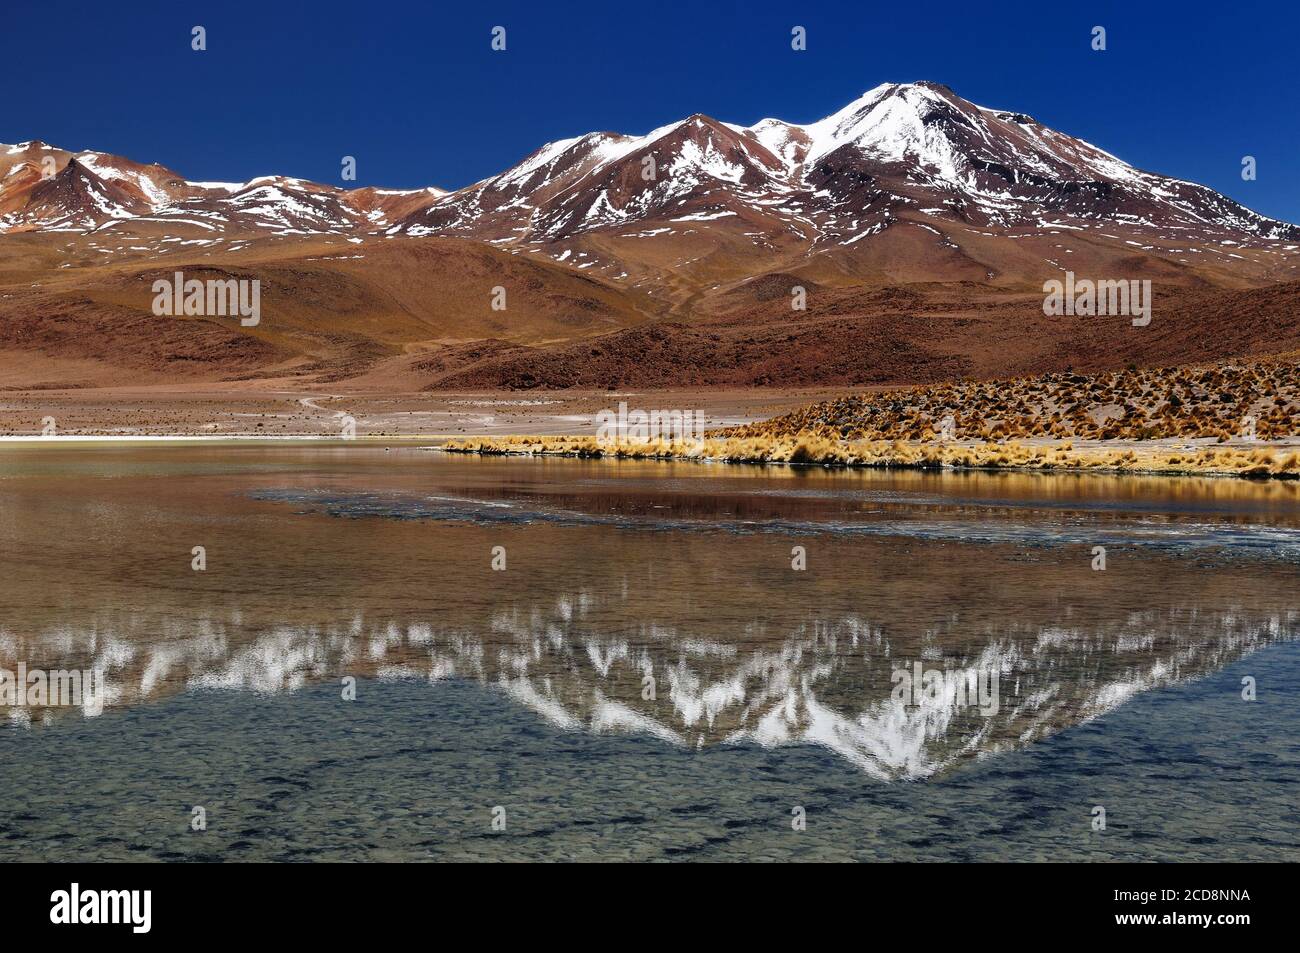 Bolivia - el más bello de los Andes en América del Sur. El paisaje surrealista es casi desarbolado, salpicada por colinas y volcanes chilenos cercano Foto de stock